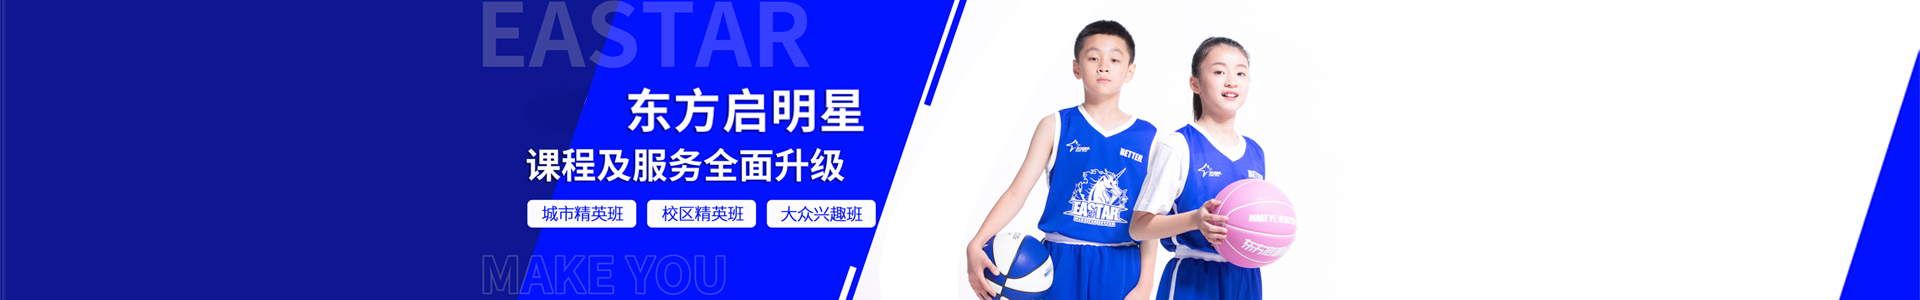 东方启明星少儿篮球培训学校